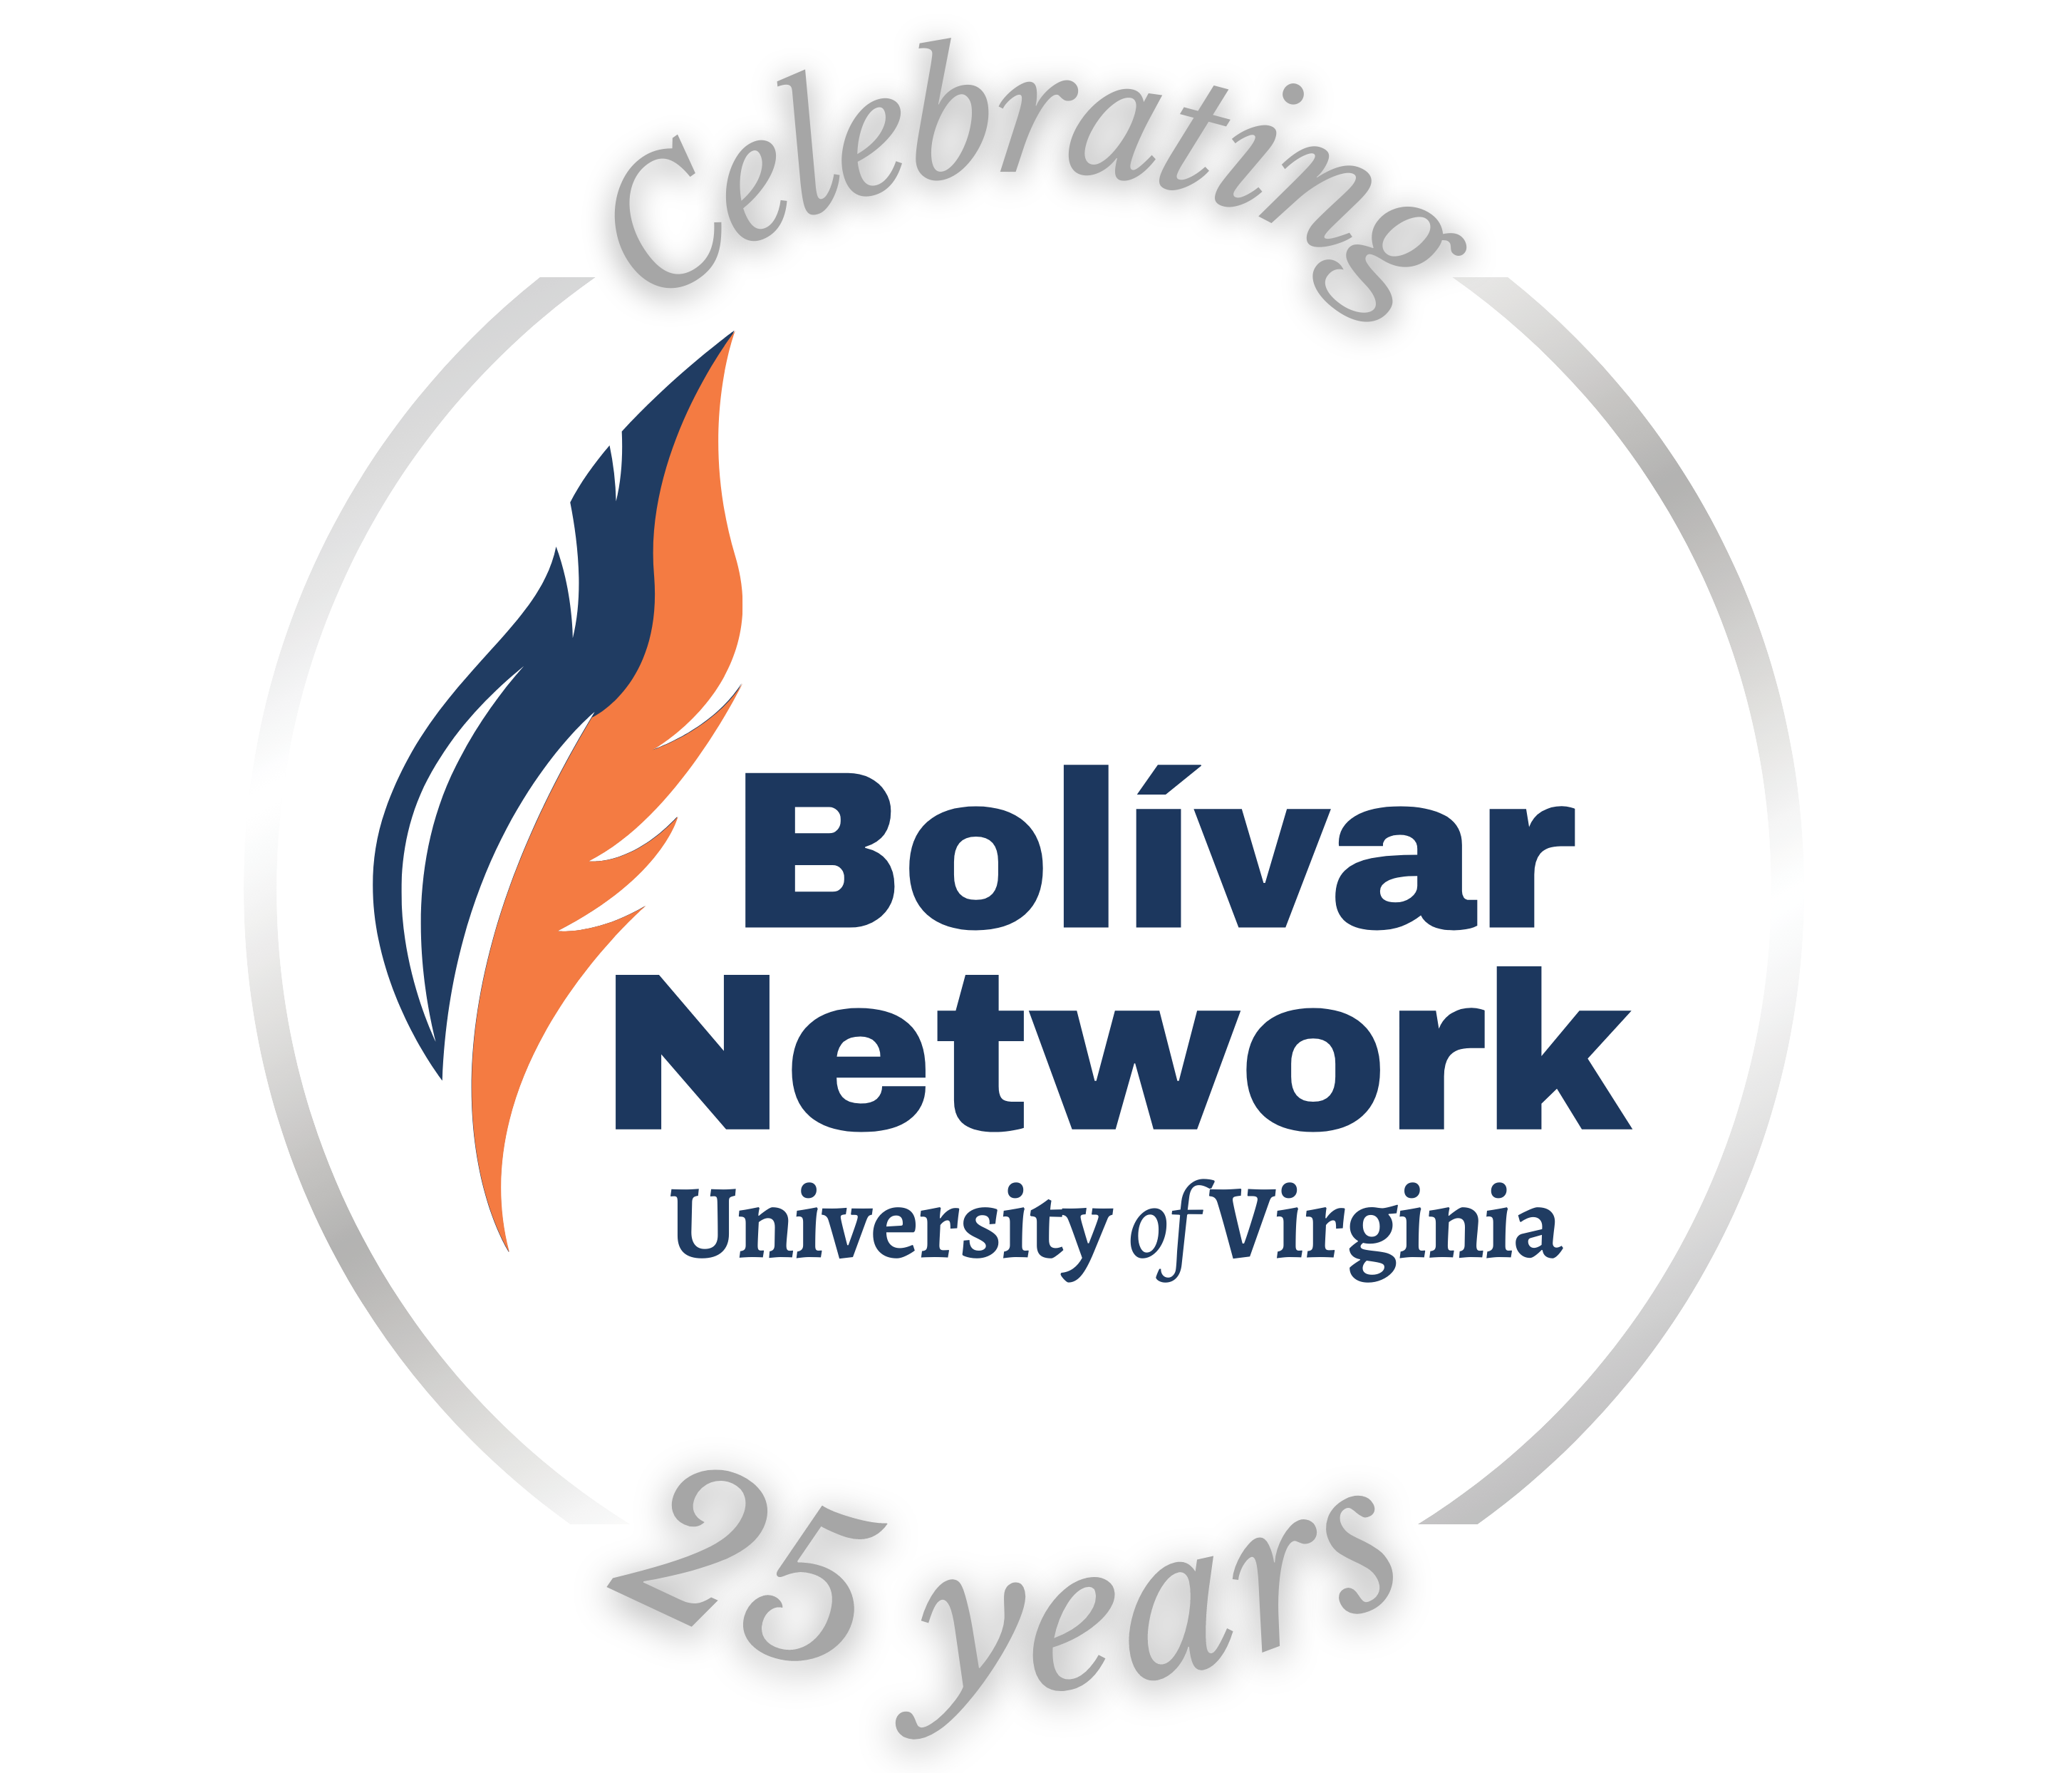 The Bolívar Network